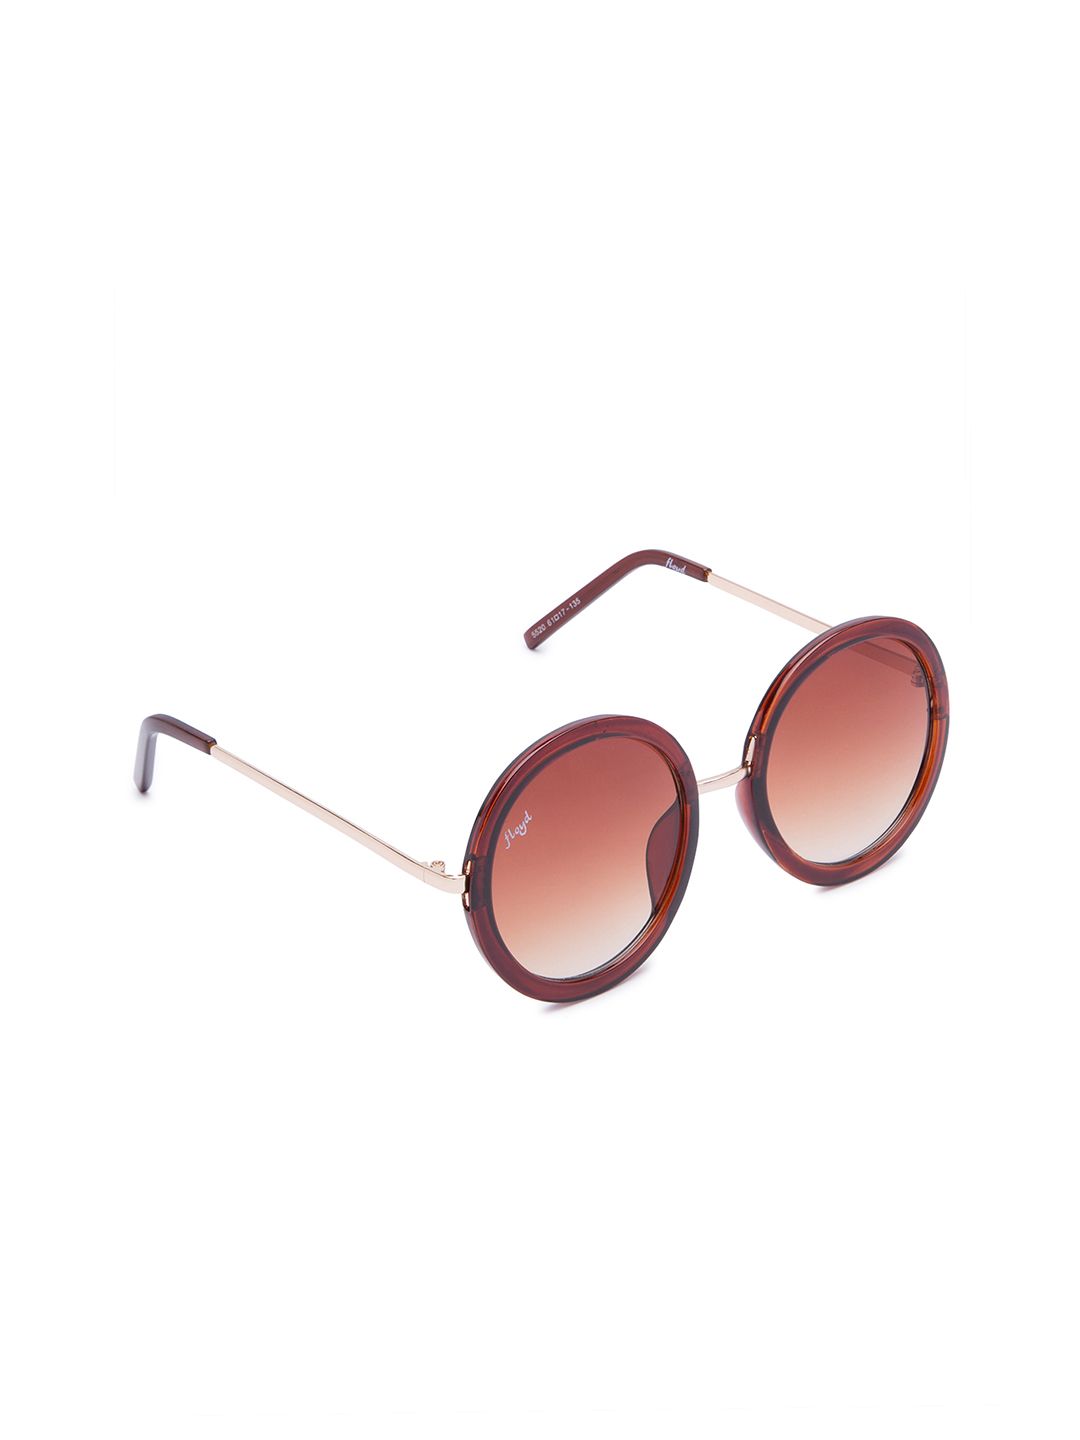 Floyd Unisex Round Sunglasses Price in India